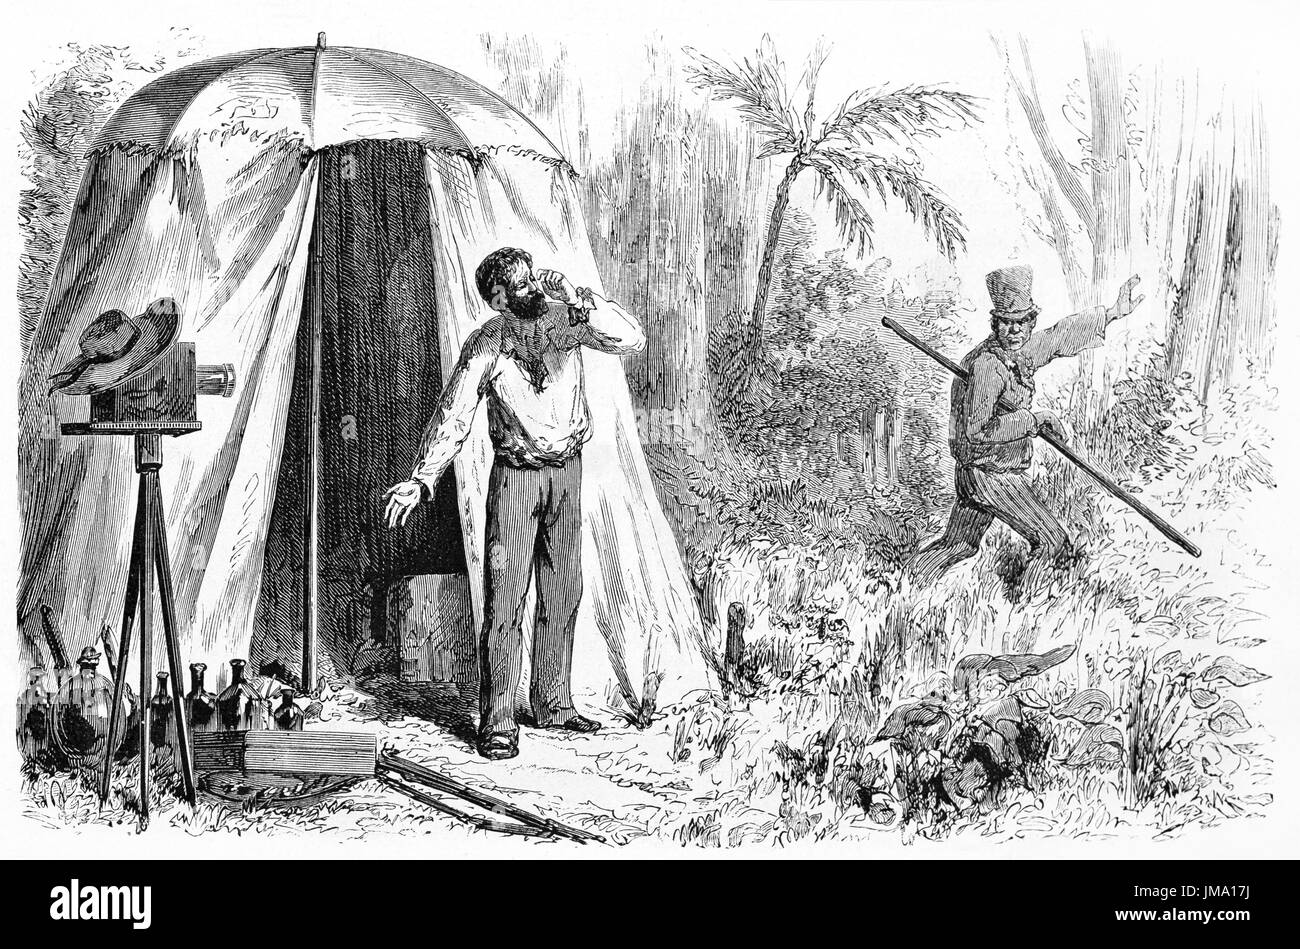 Alte eingraviert Abbildung eines Fotografen des 19. Jahrhunderts im Amazonas-Dschungel mit seiner Ausrüstung und sein Assistent. Erstellt von Maurand, veröffentlichten o Stockfoto